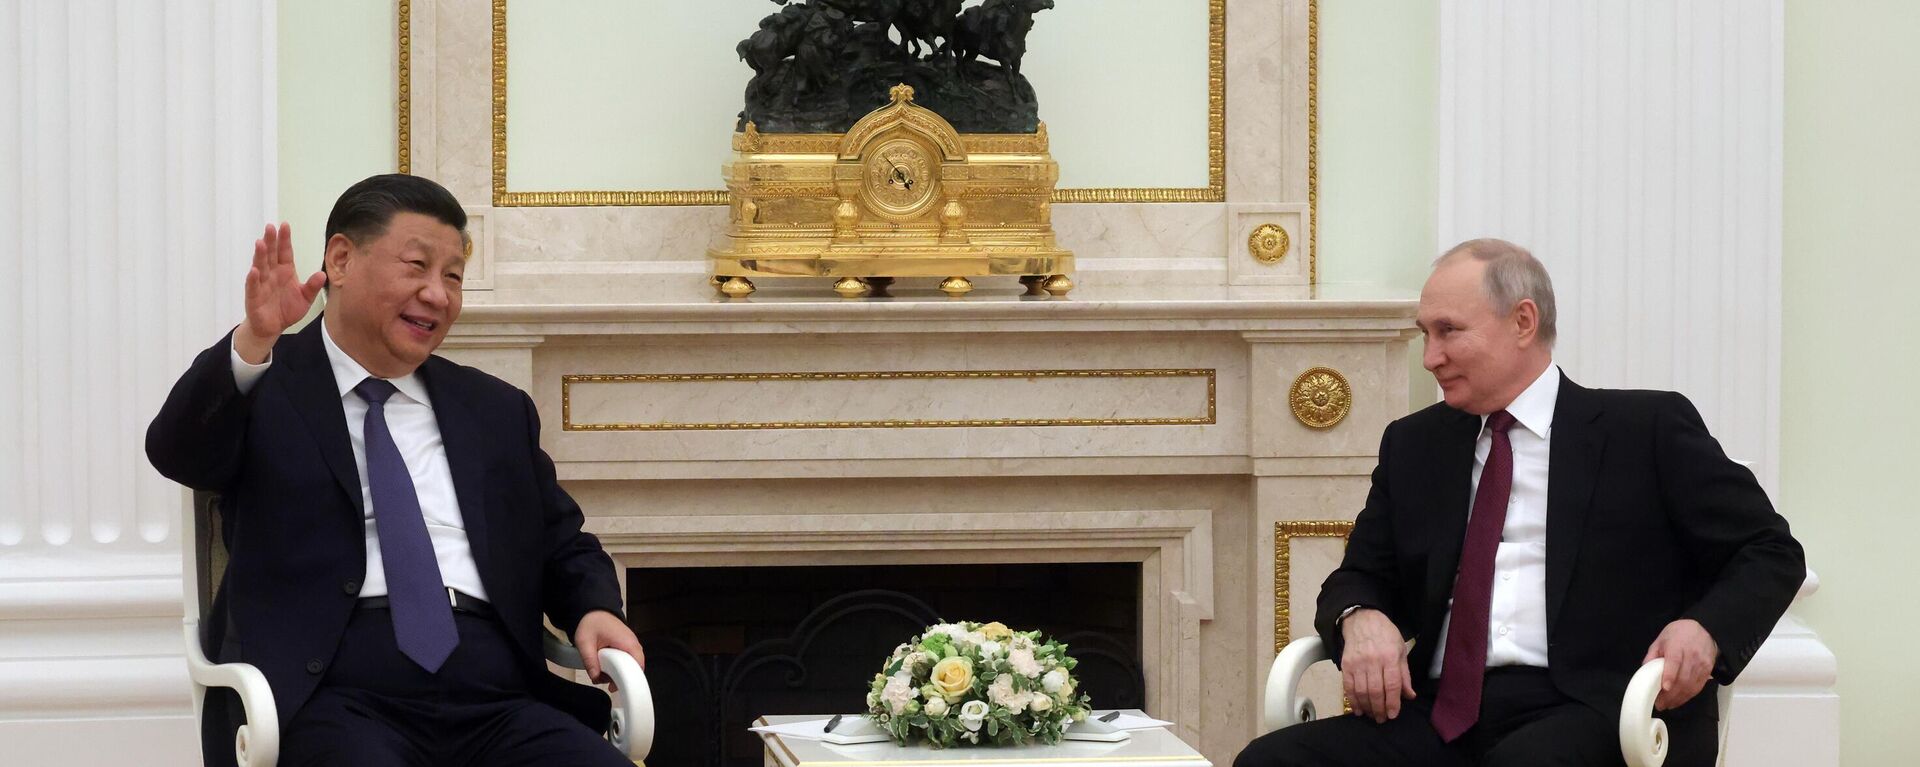 Chủ tịch Tập Cận Bình hội đàm chính thức với Tổng thống Putin: Nhiều vấn đề 'nóng' được thảo luận trực tiếp  - Ảnh 1.